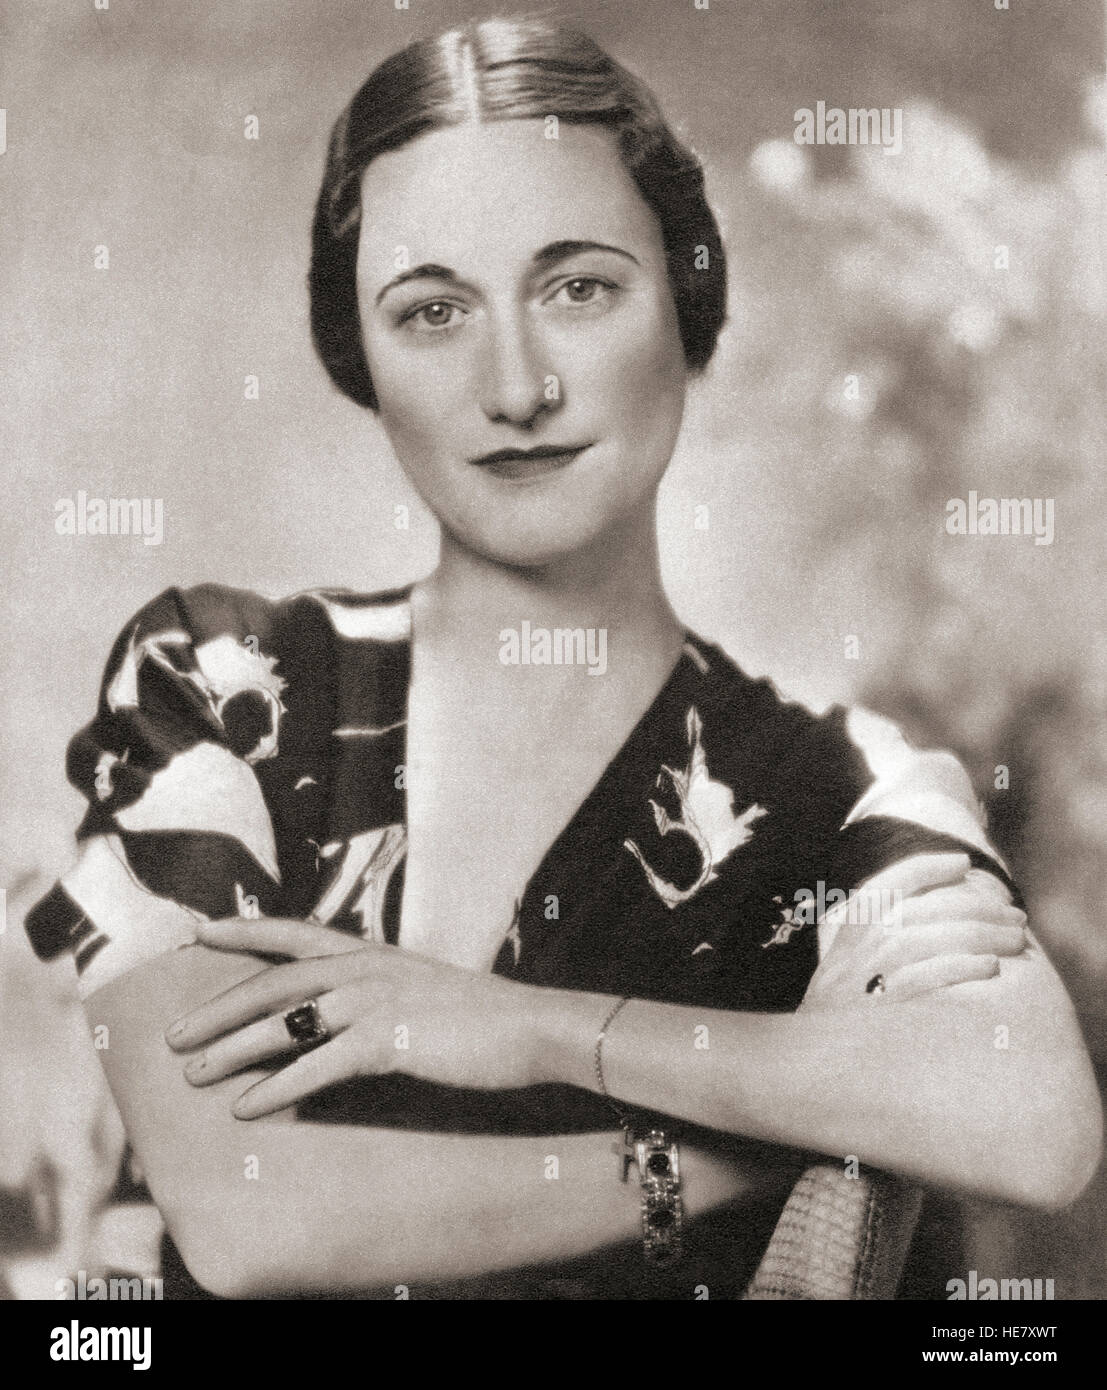 Wallis Simpson, in seguito duchessa di Windsor, nato Bessie Wallis Warfield, 1896 - 1986. American socialite per cui il re Edoardo VIII abdica nel 1936. Foto Stock